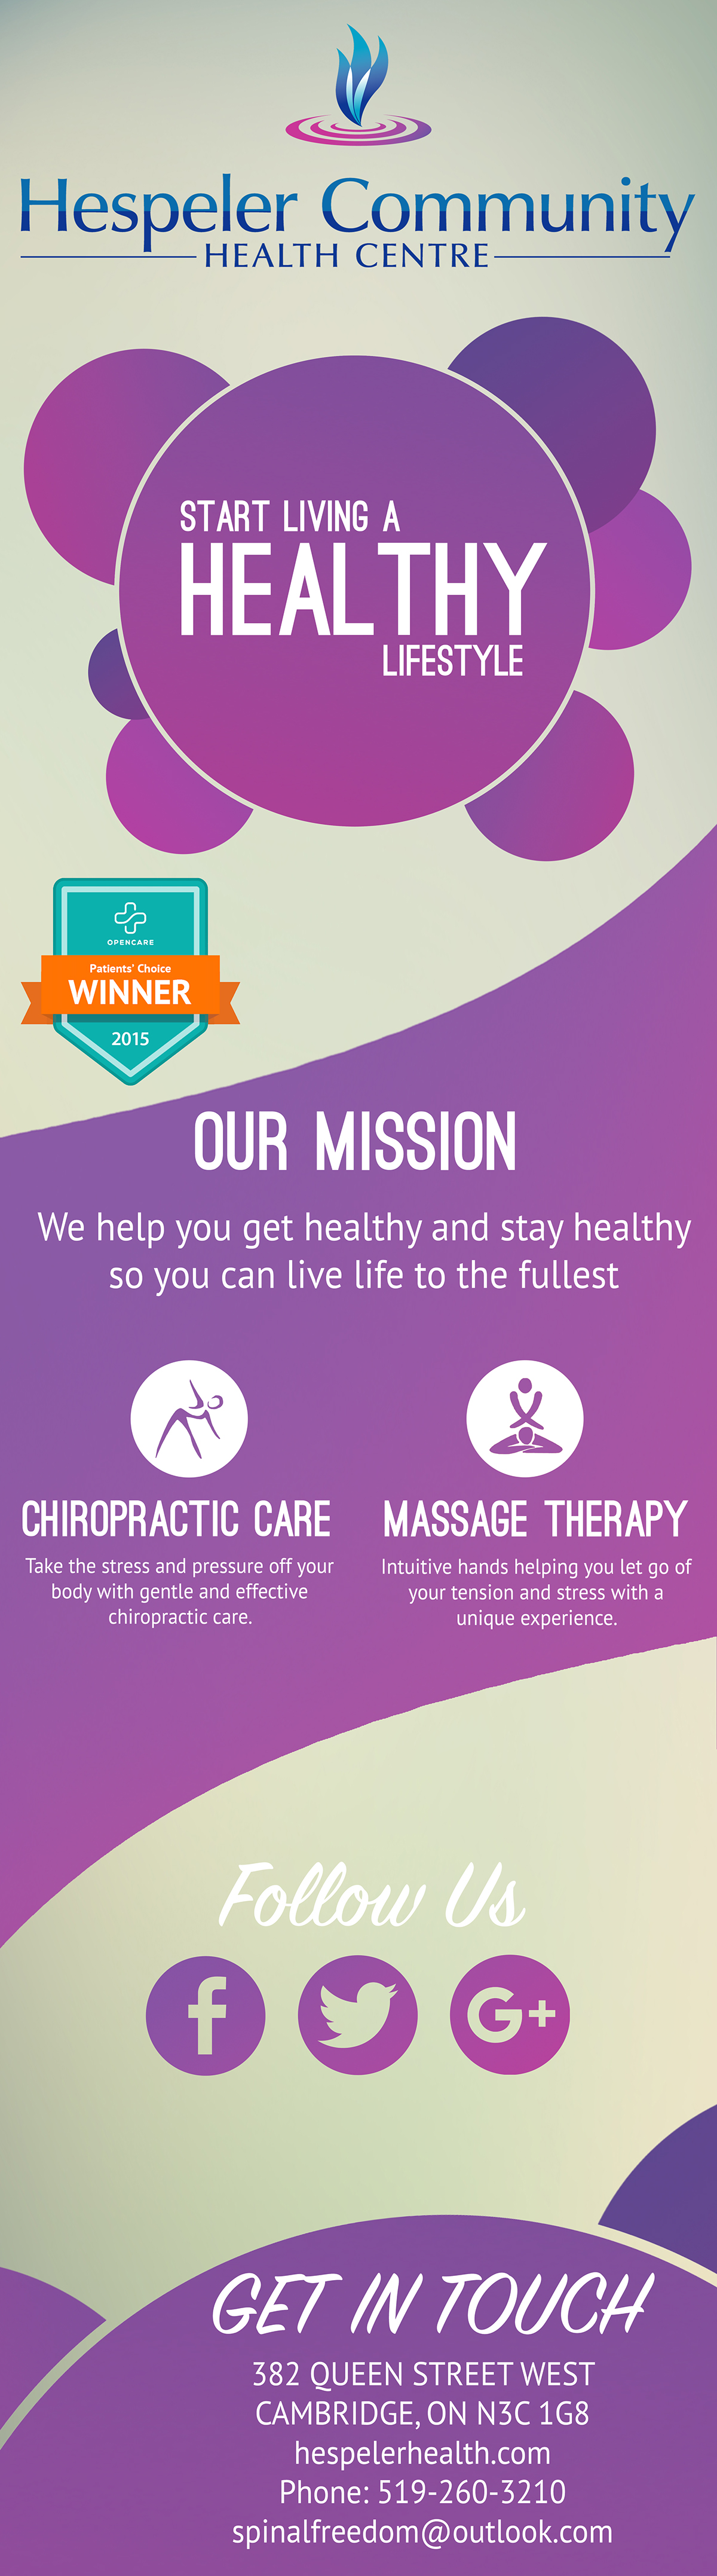 design banner graphic chiropractor massage purple